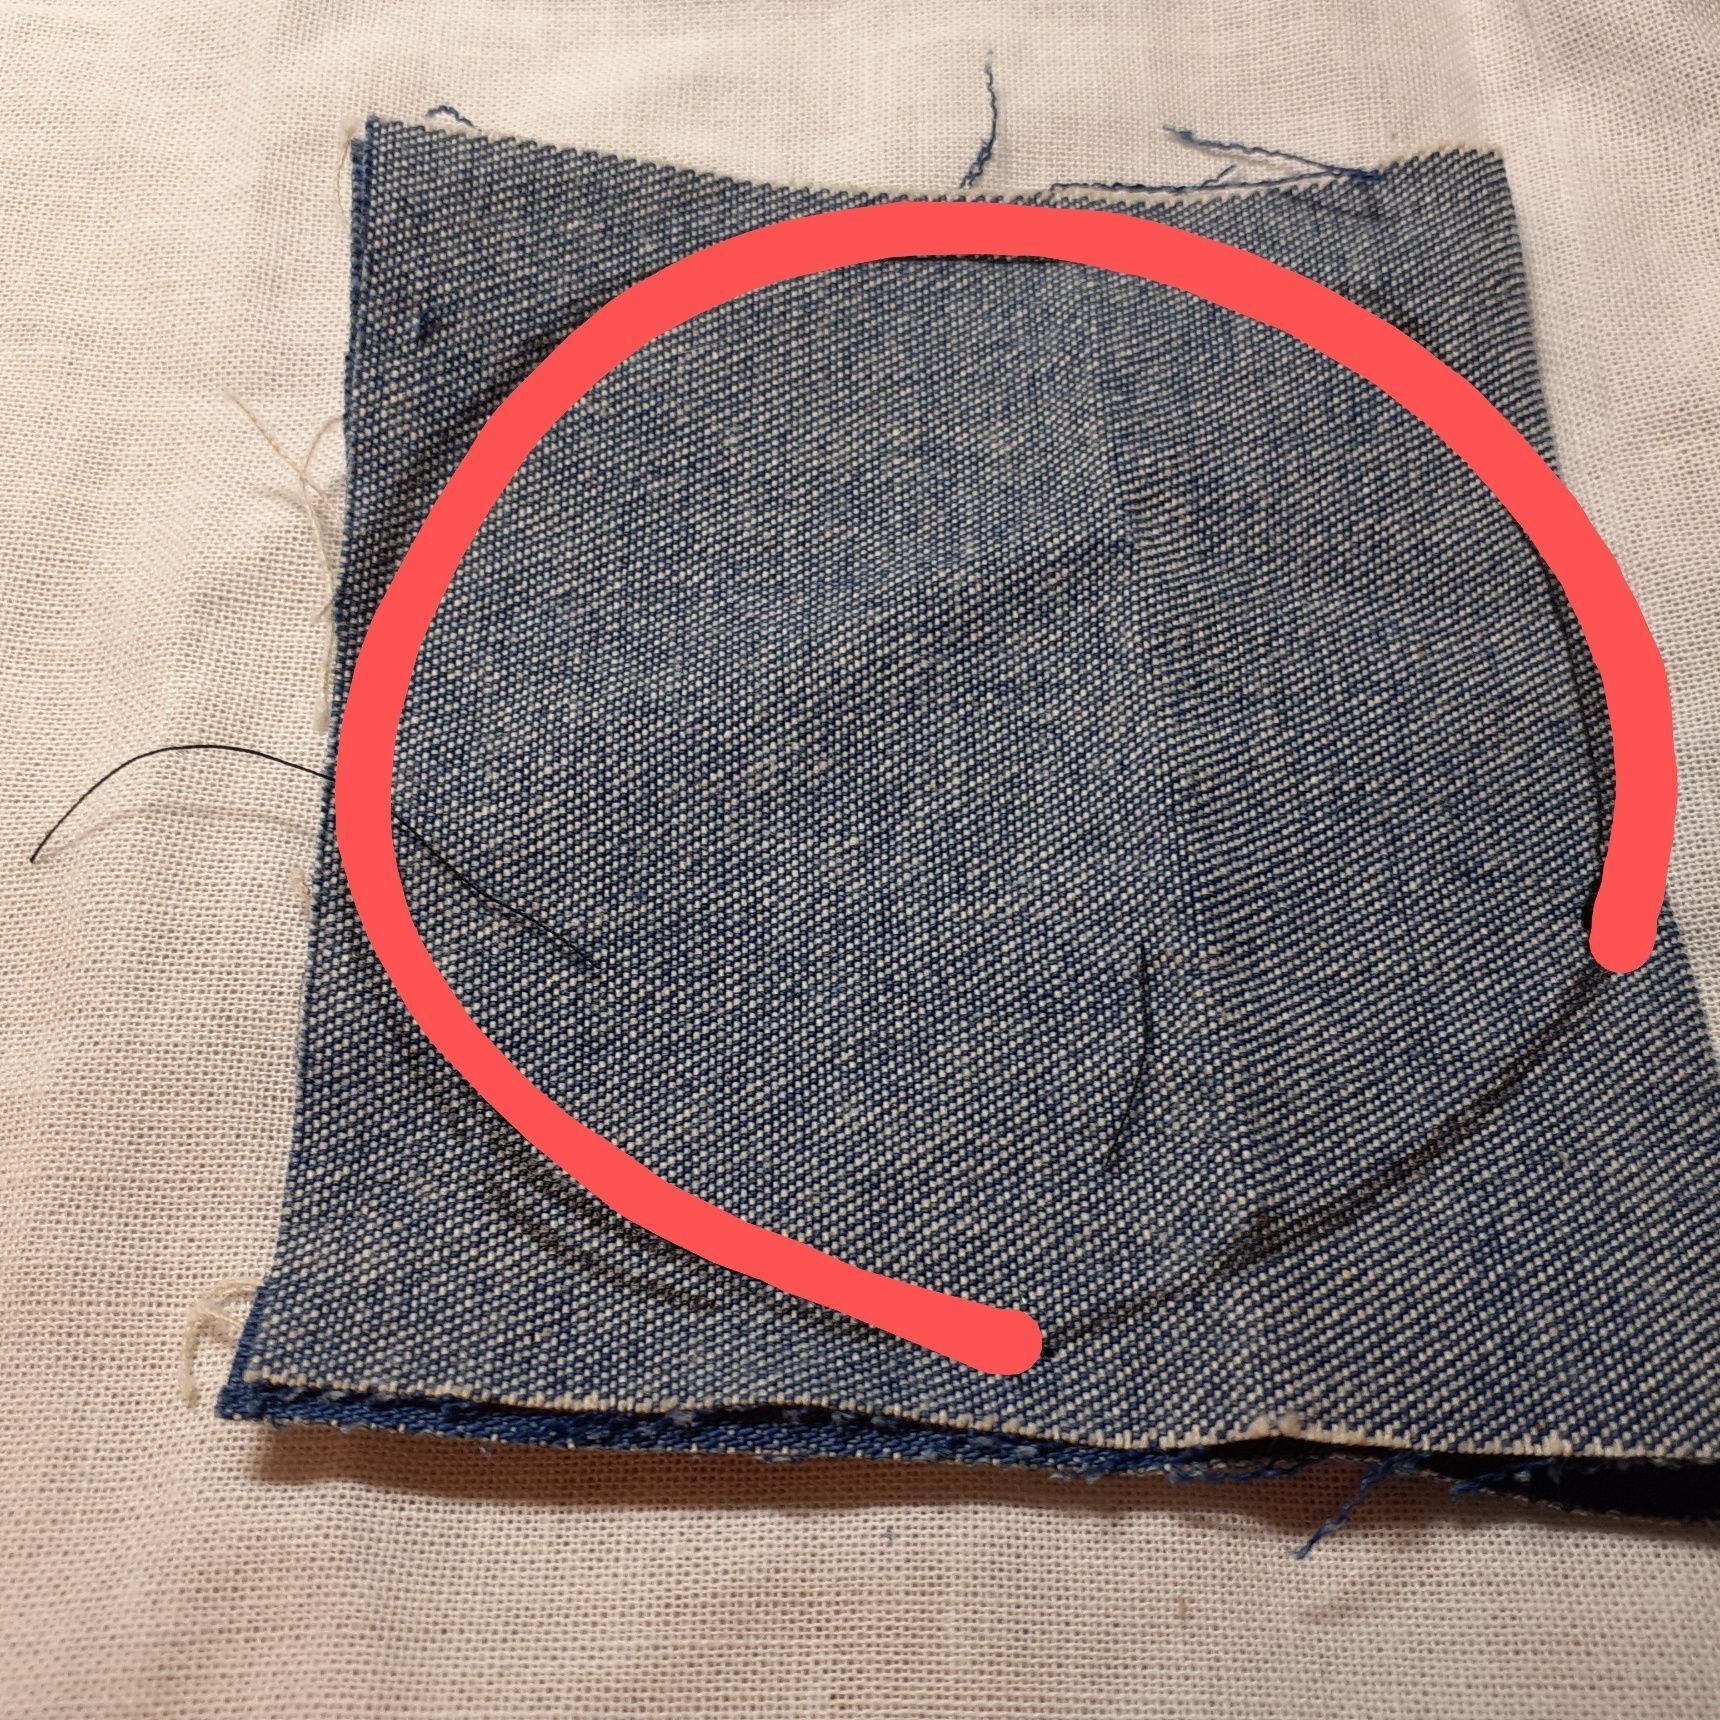 ①ジーンズのハギレを中表にして、纏まった髪の毛のサイズに合わせて、赤線の部分を縫う。